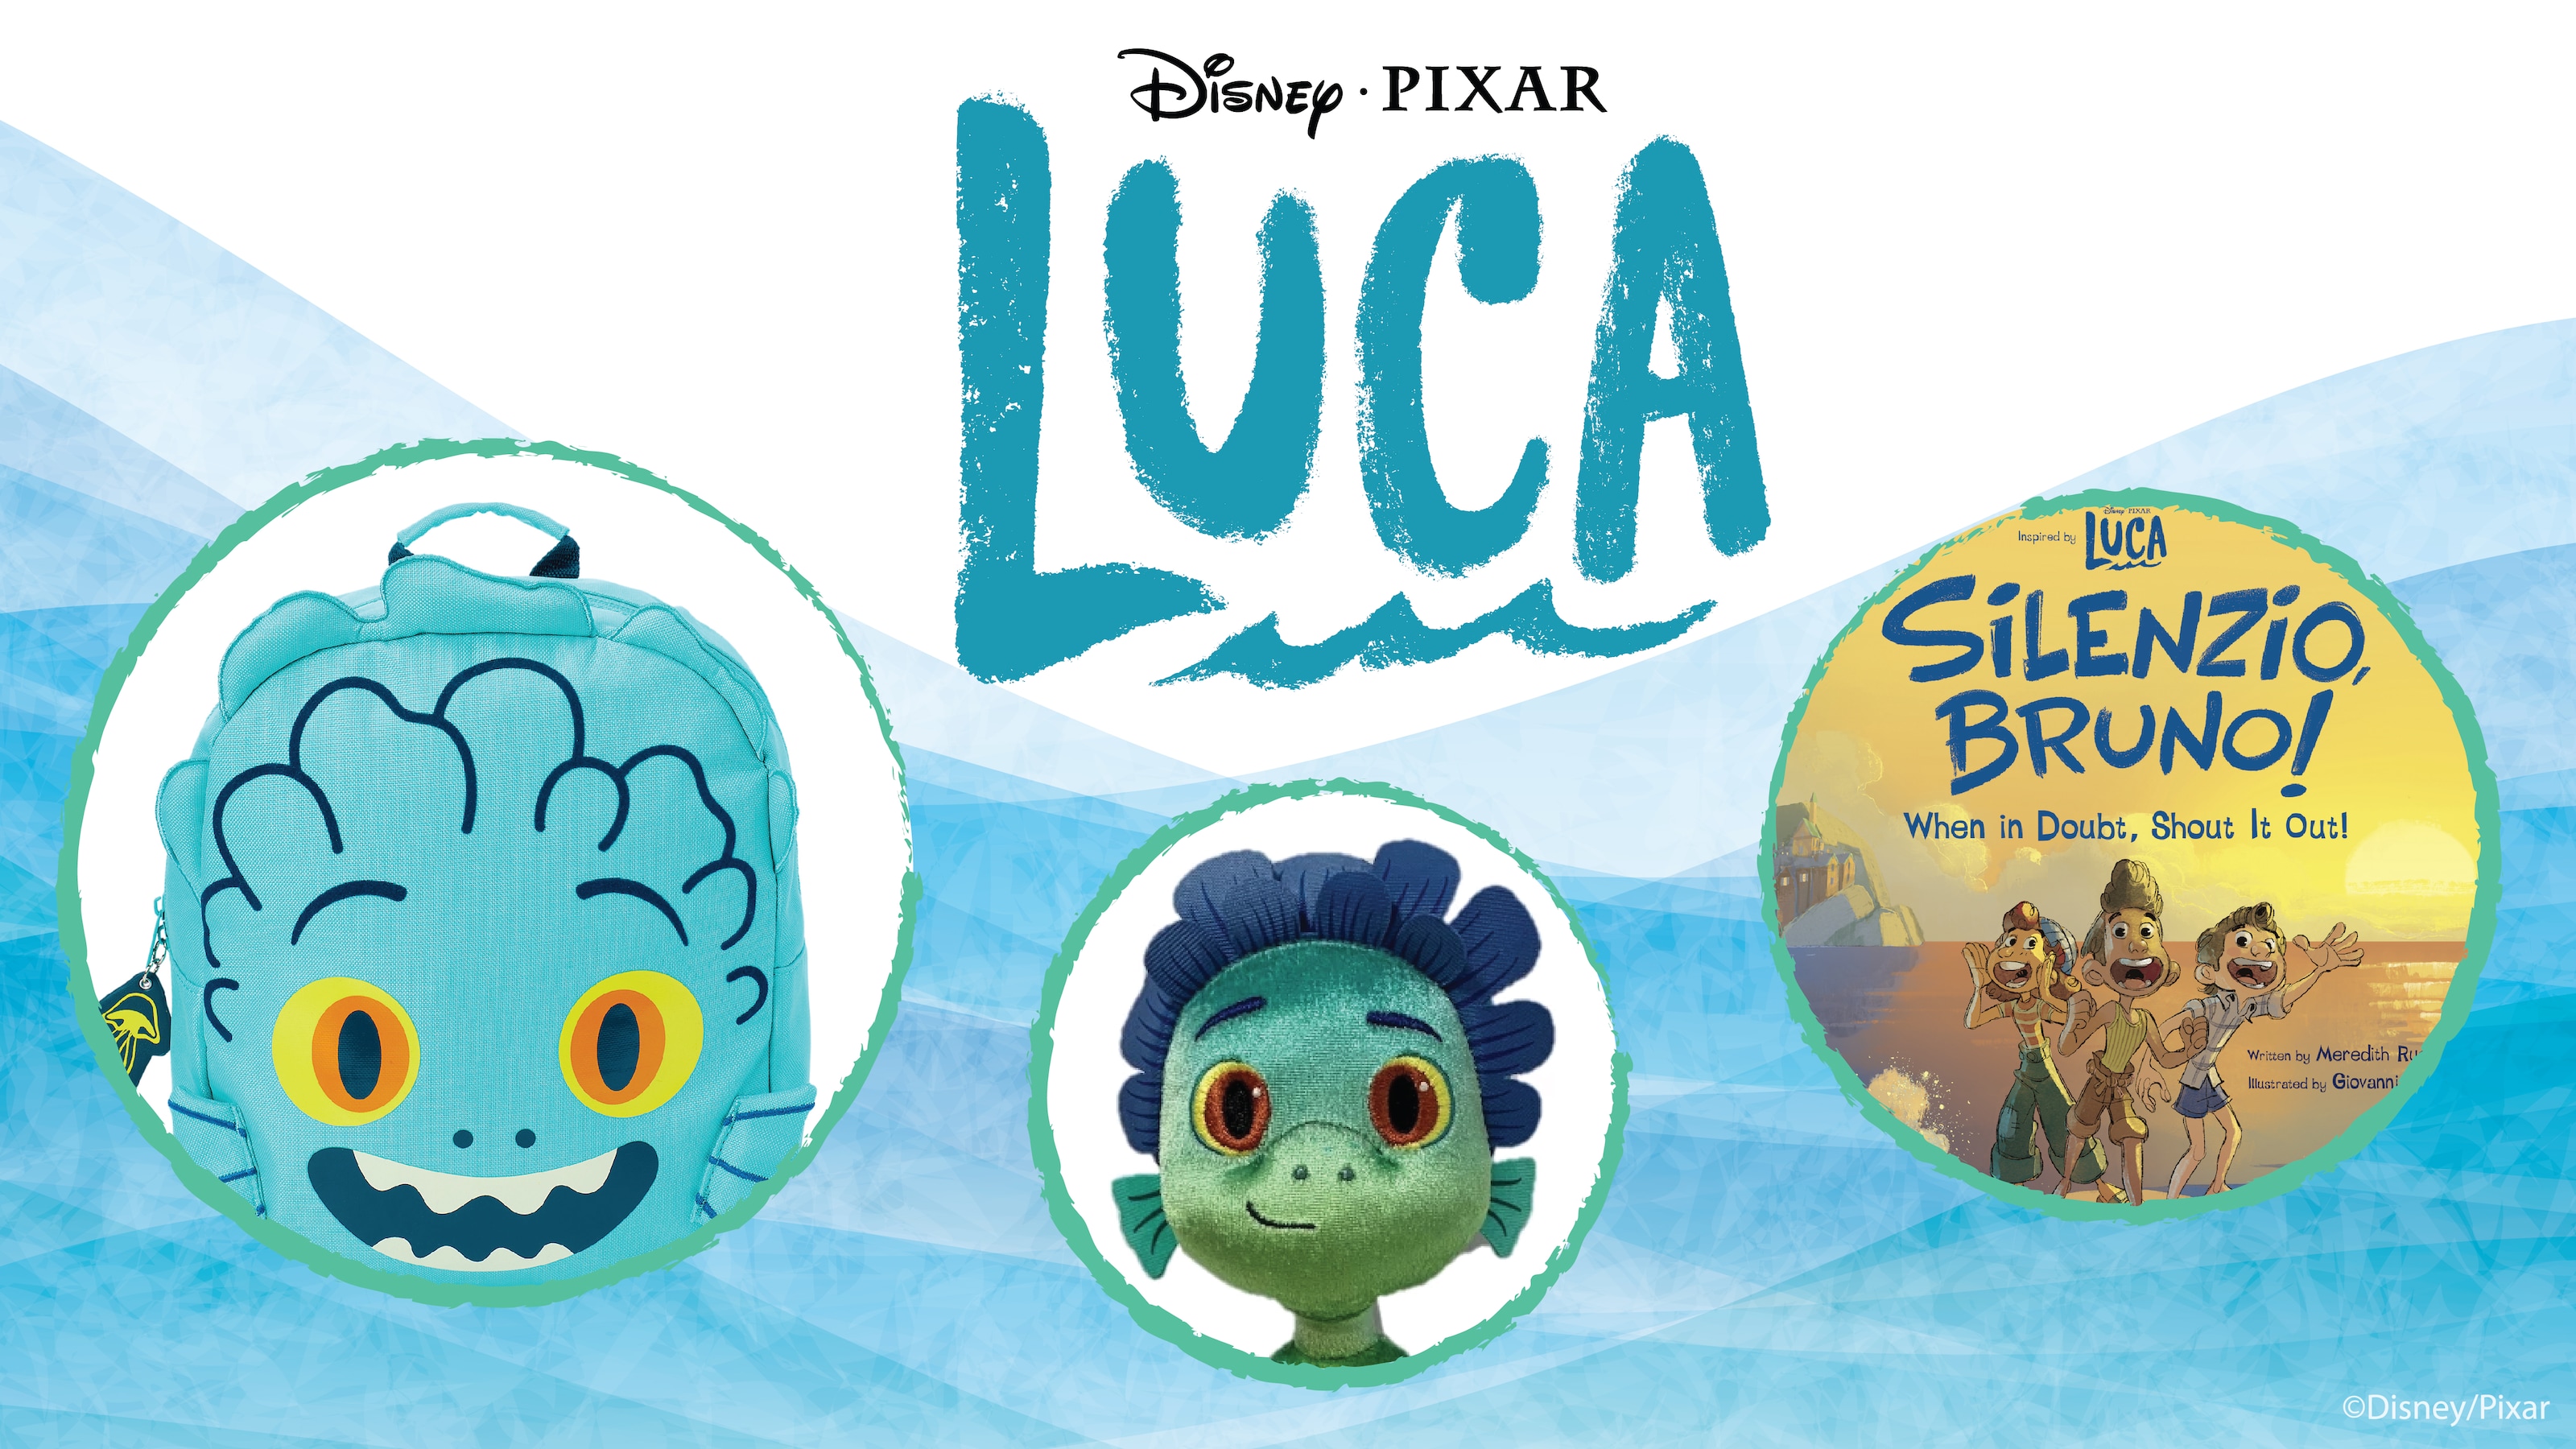 Luca Sea Monster Ears 